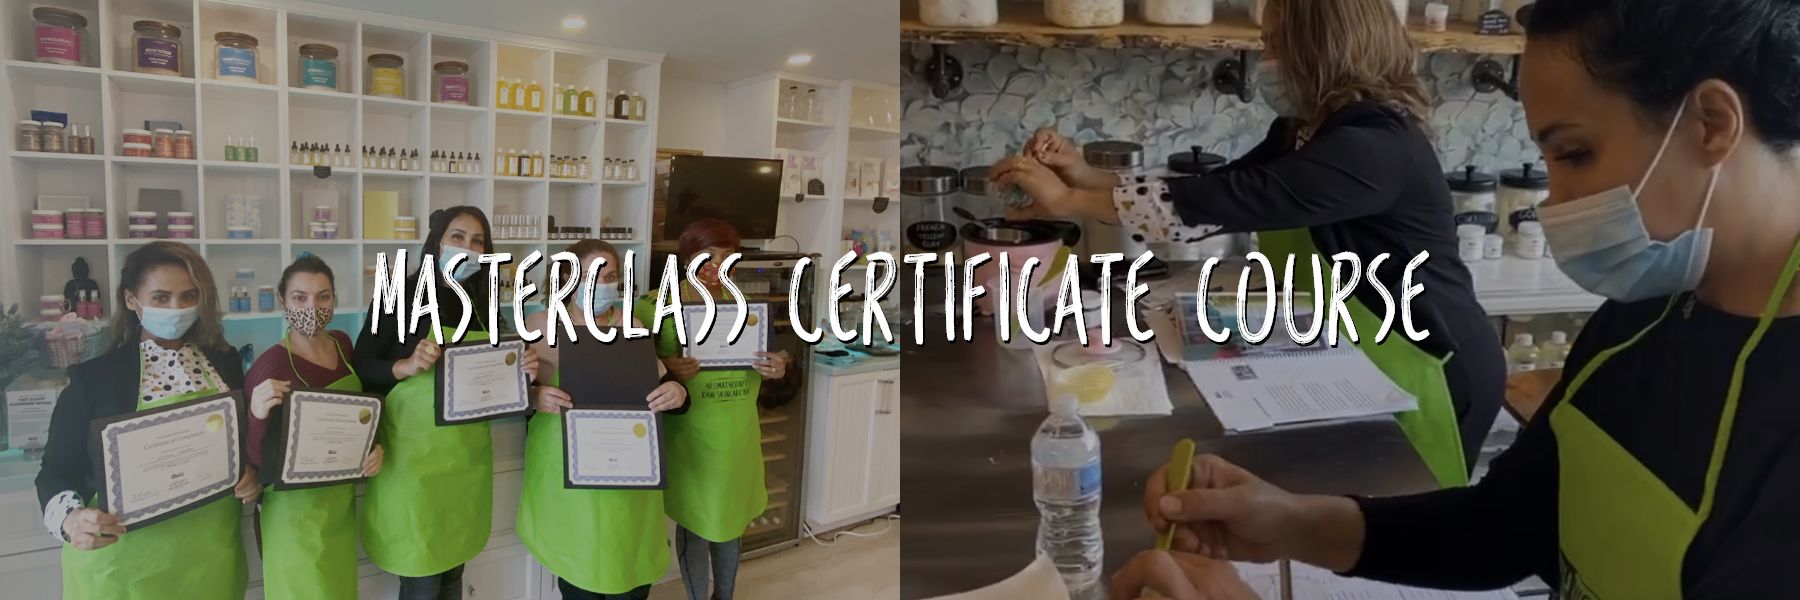 Masterclass Certificate Course